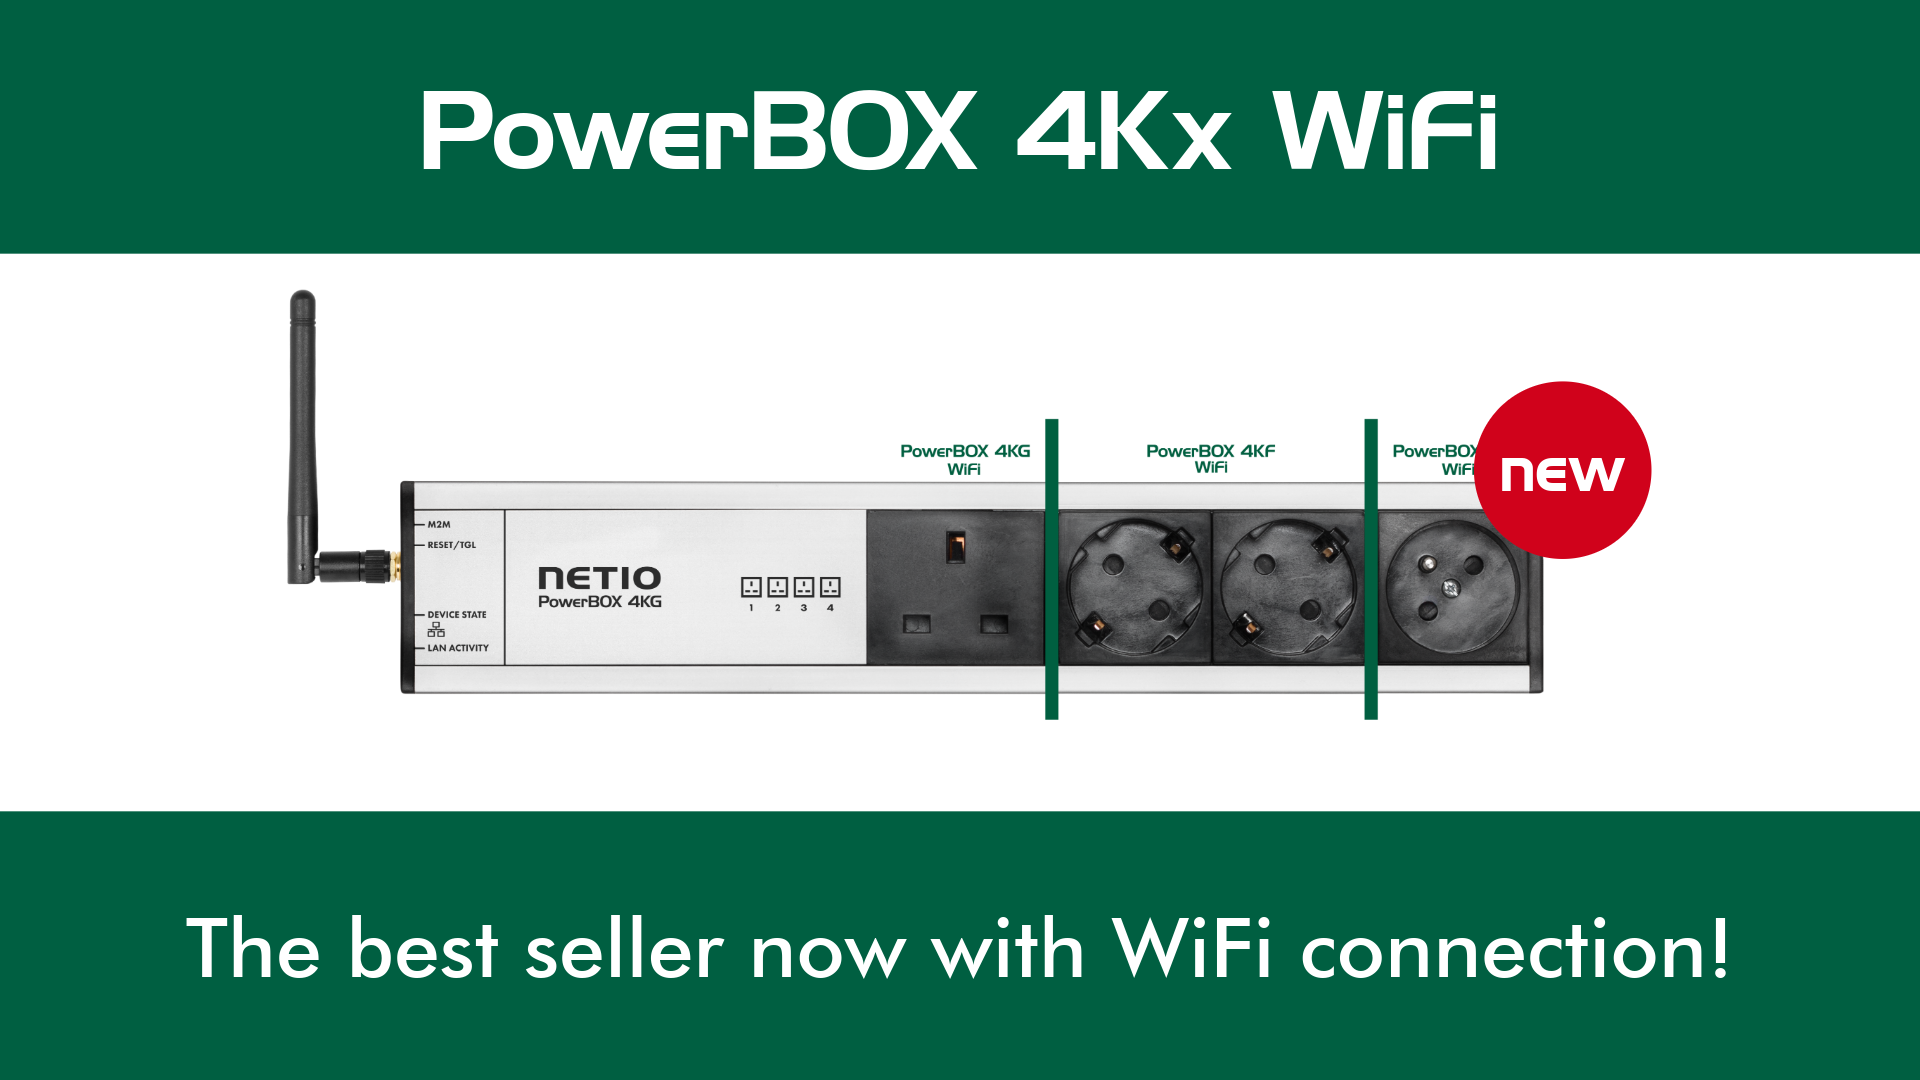 PowerBOX 4Kx WiFi